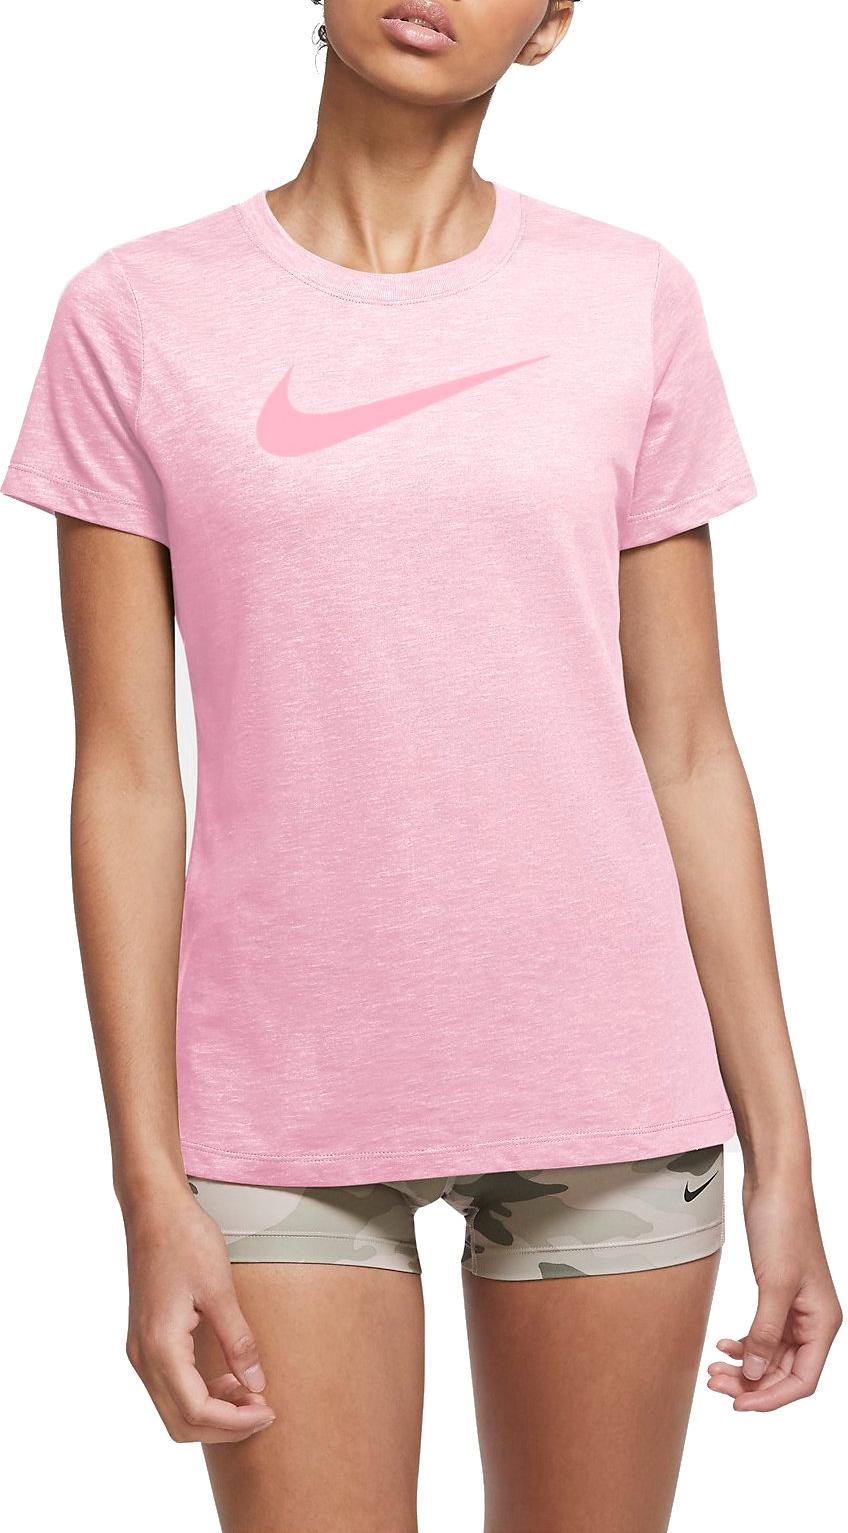 Dámské tréninkové tričko s krátkým rukávem Nike Dri-FIT